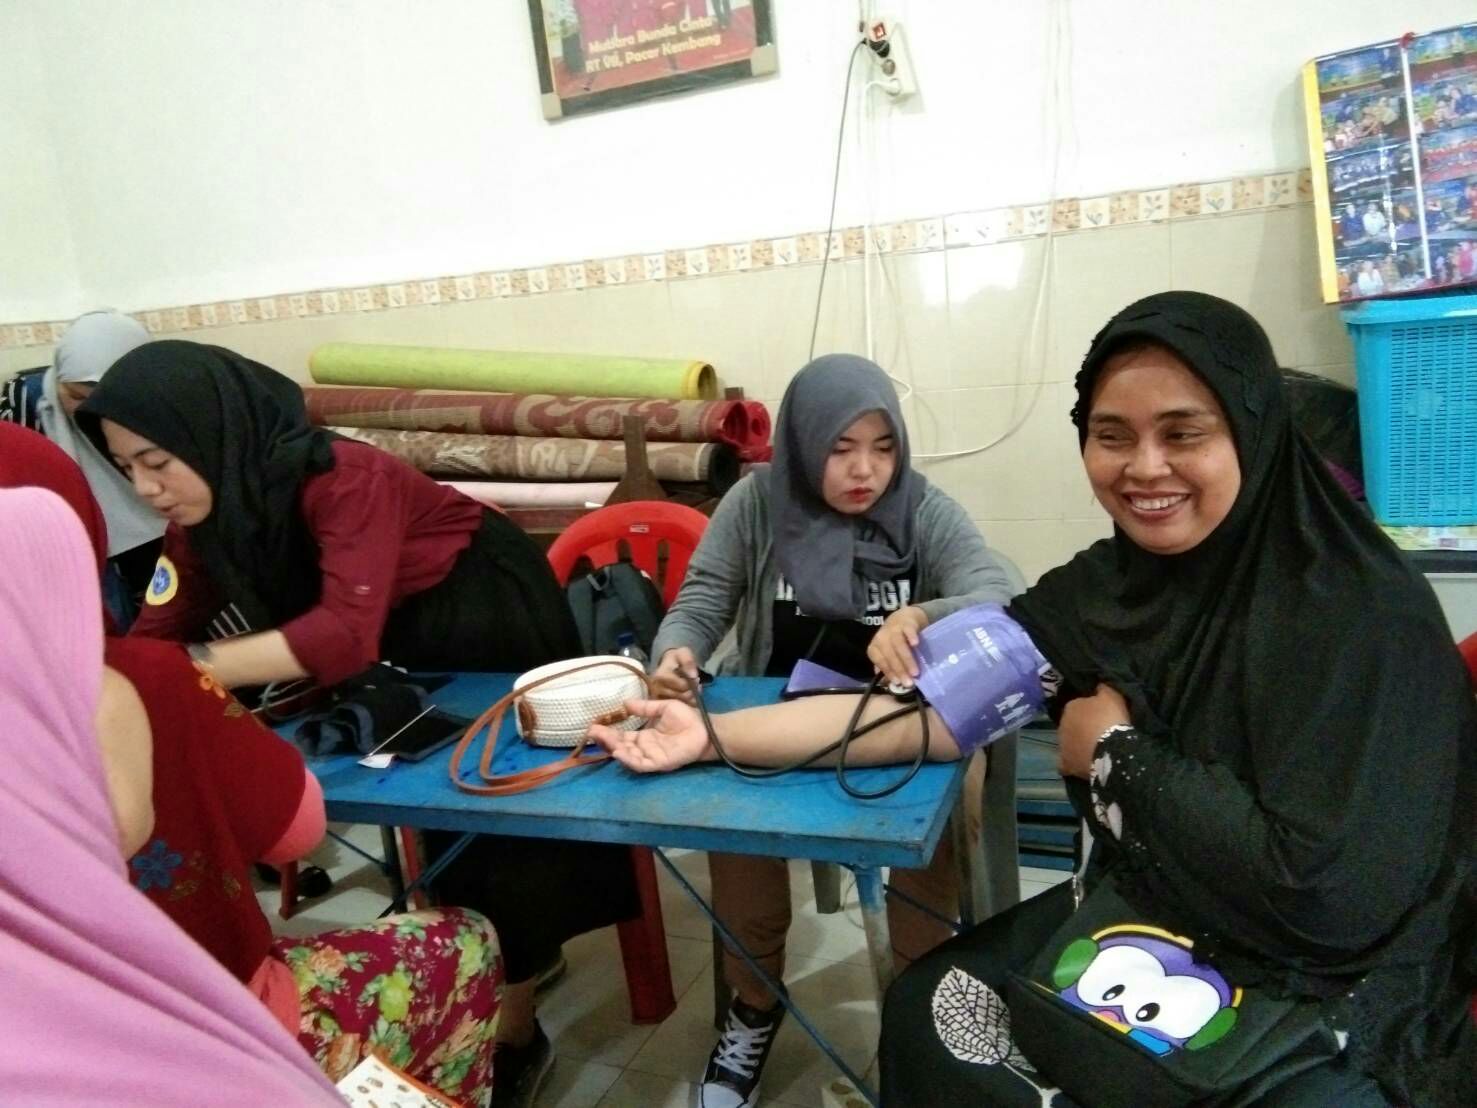 Health Exam in Balai RW 7 Kelurahan Pacar Kembang on Saturday, April 20, 2019